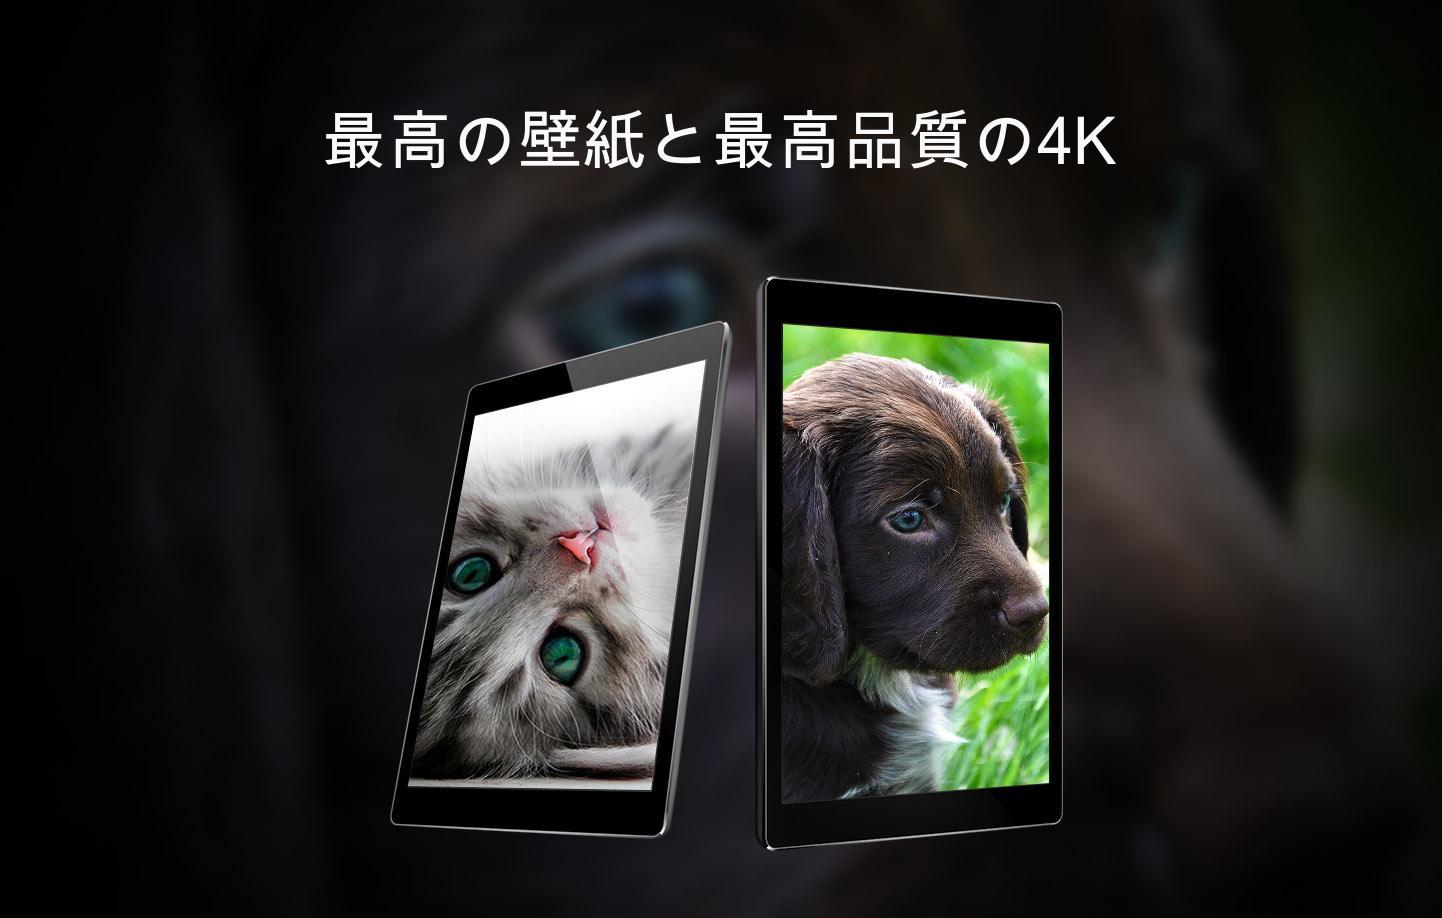 Android 用の かわいい動物の壁紙 Apk をダウンロード